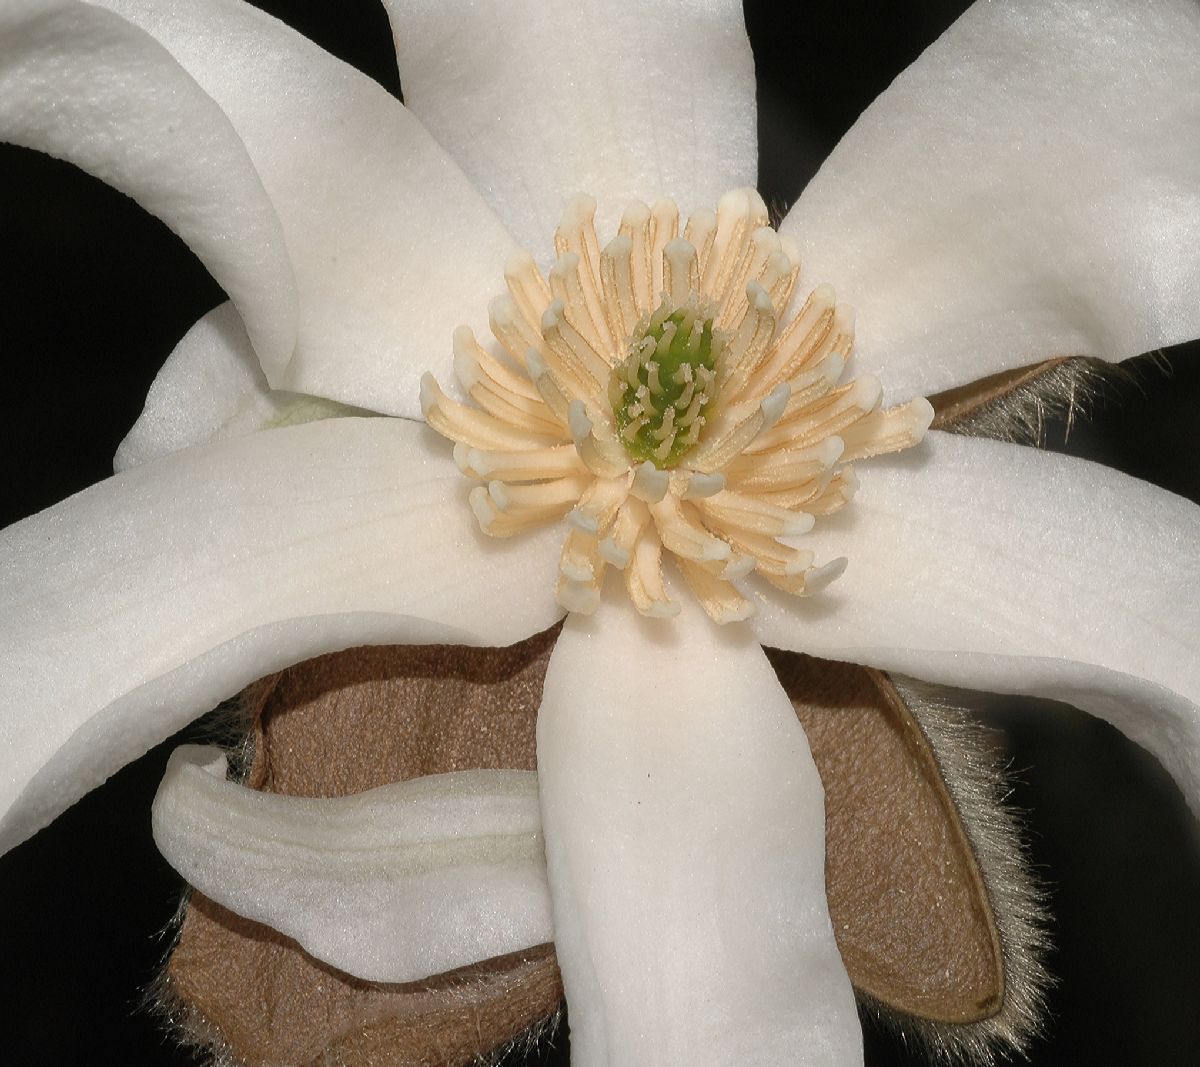 Magnoliaceae Magnolia salicifolia